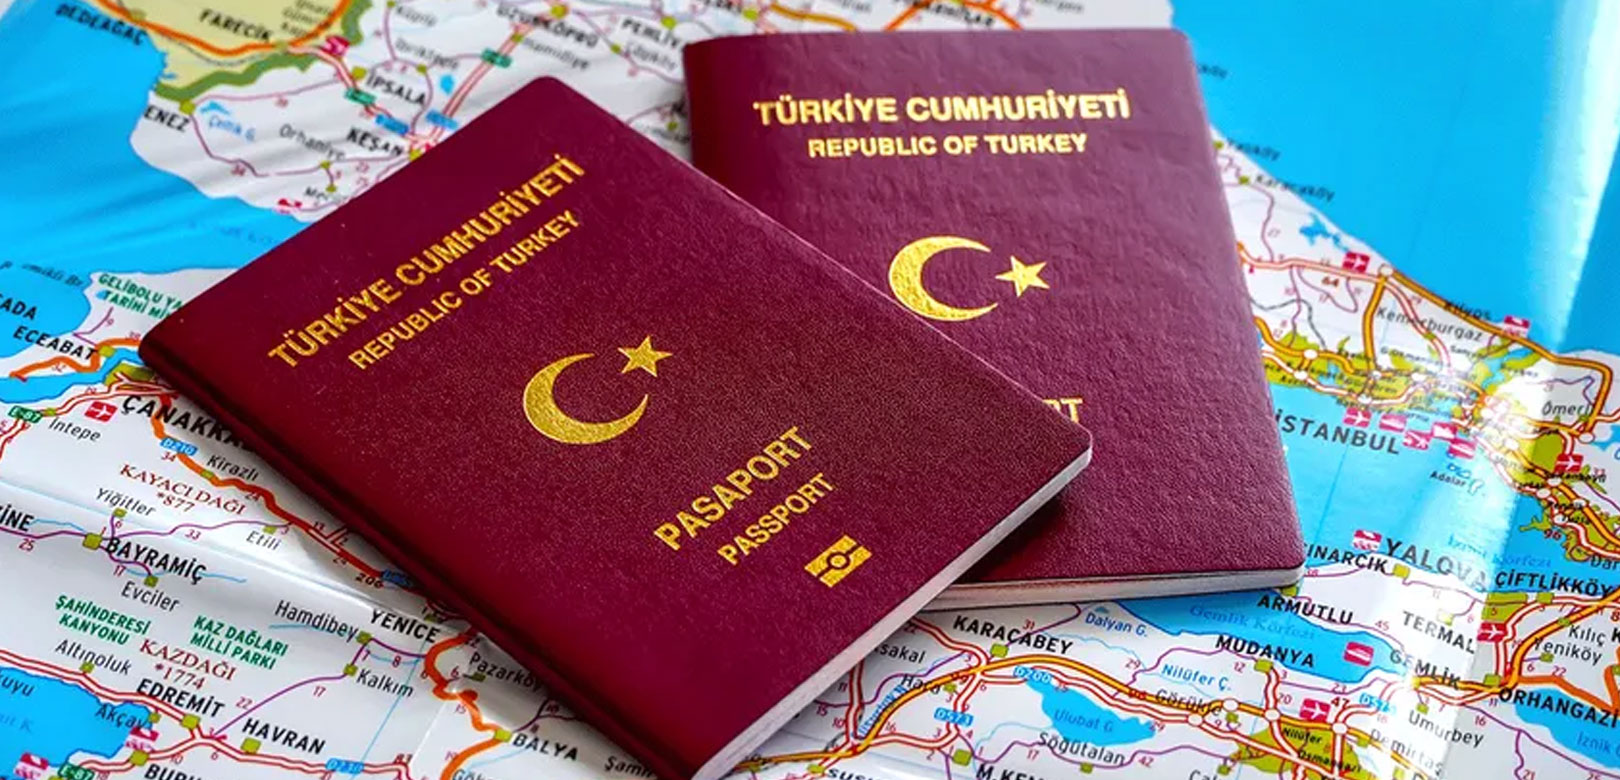 Türk pasaportuyla girilebilen ülke sayısı 118'e ulaştı